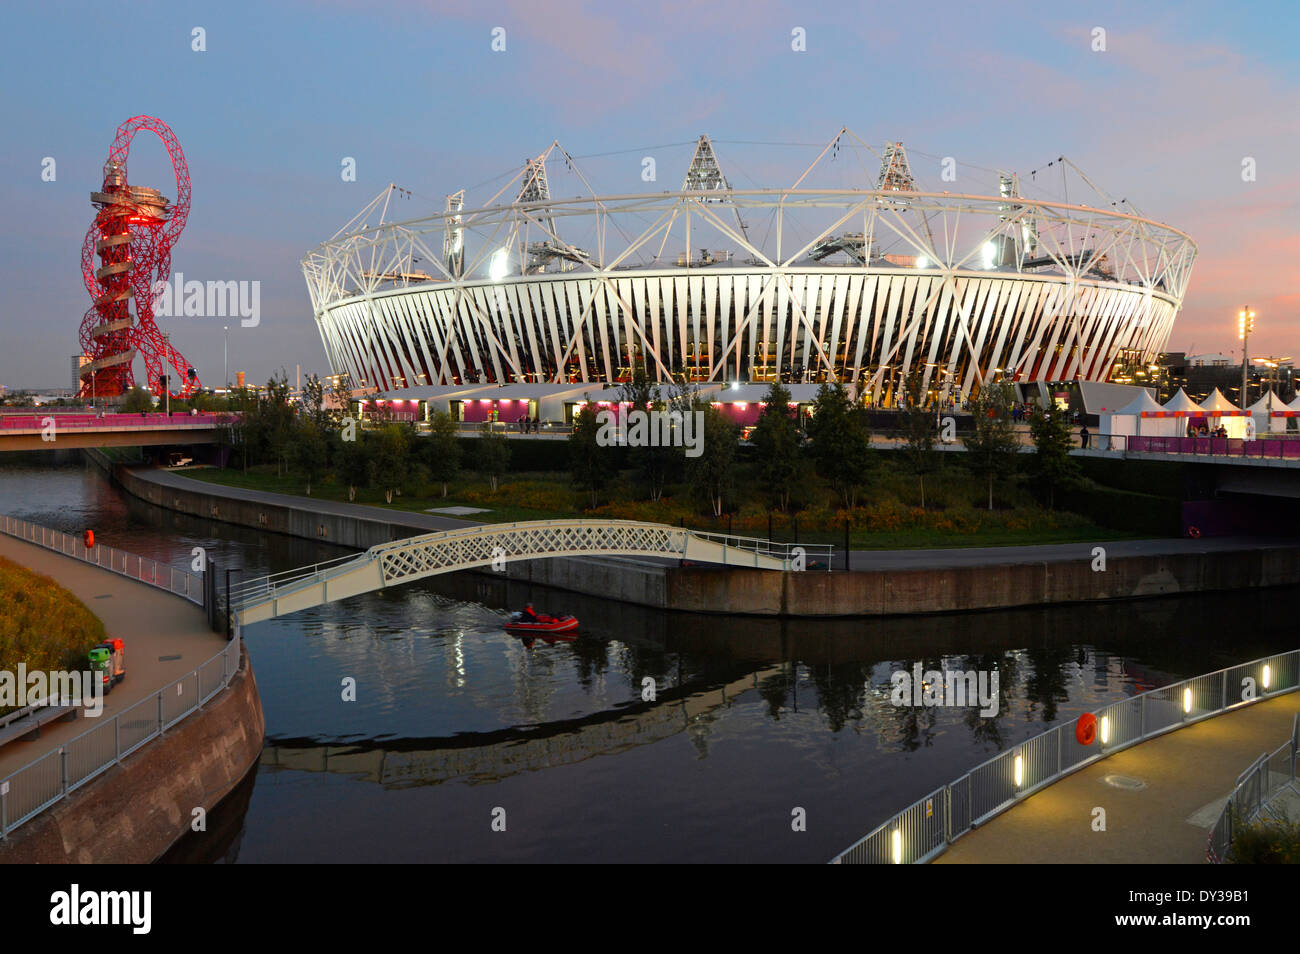 Crépuscule ciel 2012 Parc olympique Jeux paralympiques illuminés projecteur sport Stade des événements et tour Orbit ArcelorMittal Stratford Newham est de Londres ROYAUME-UNI Banque D'Images